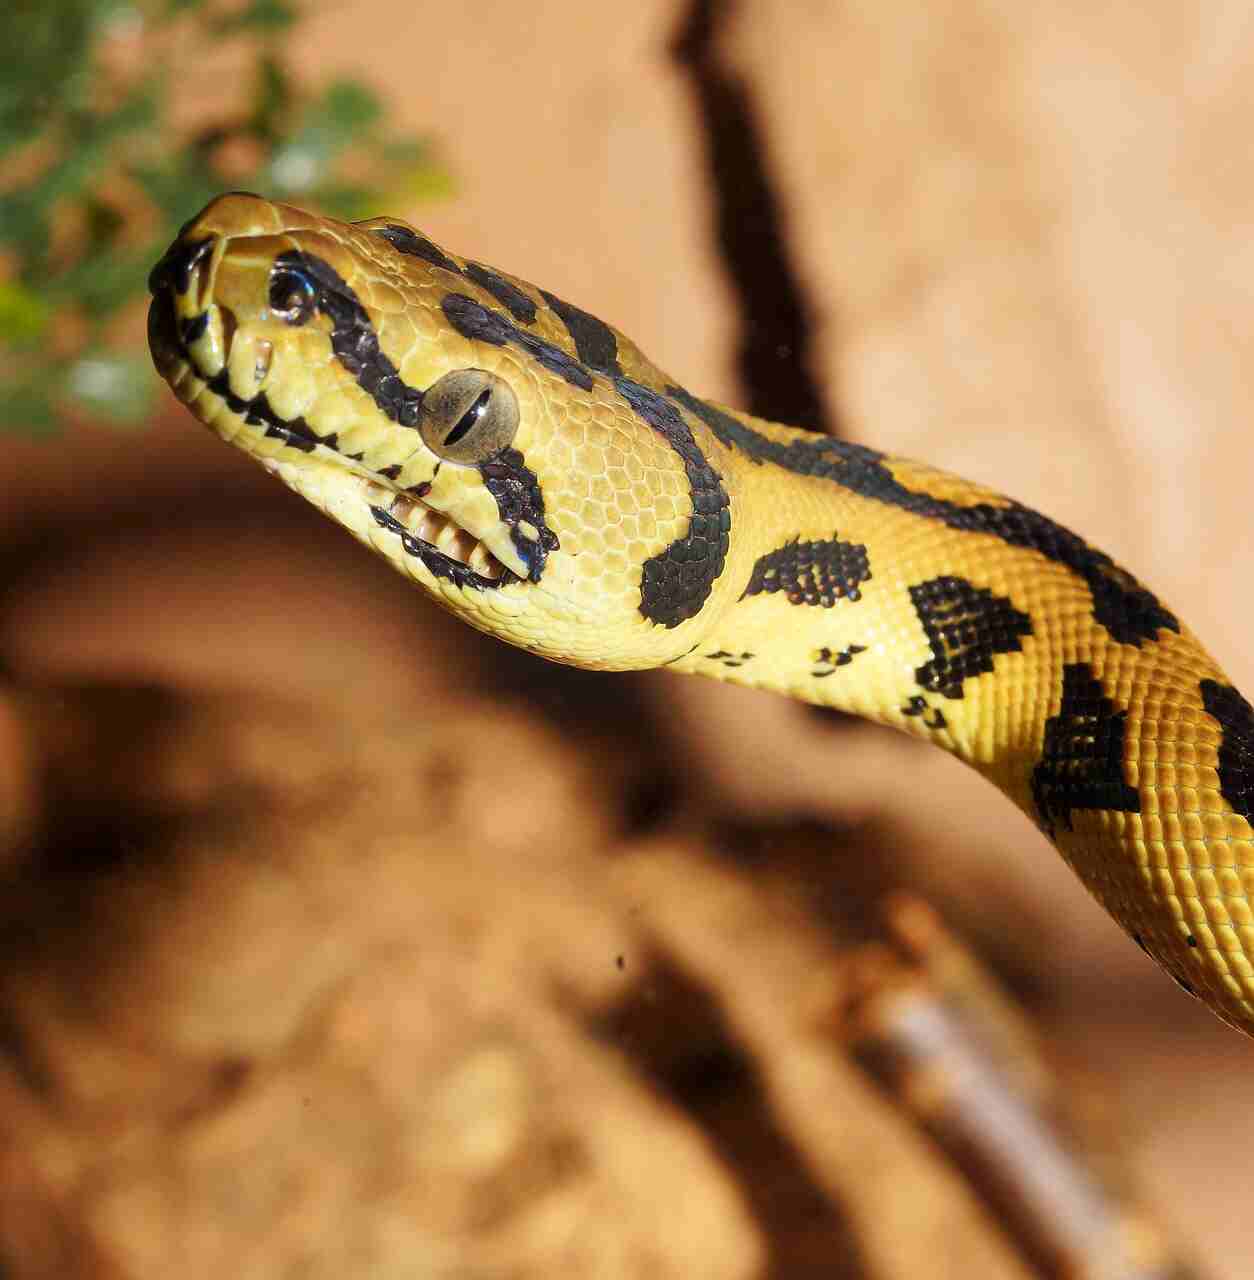 impara a identificare se un serpente è velenoso o meno